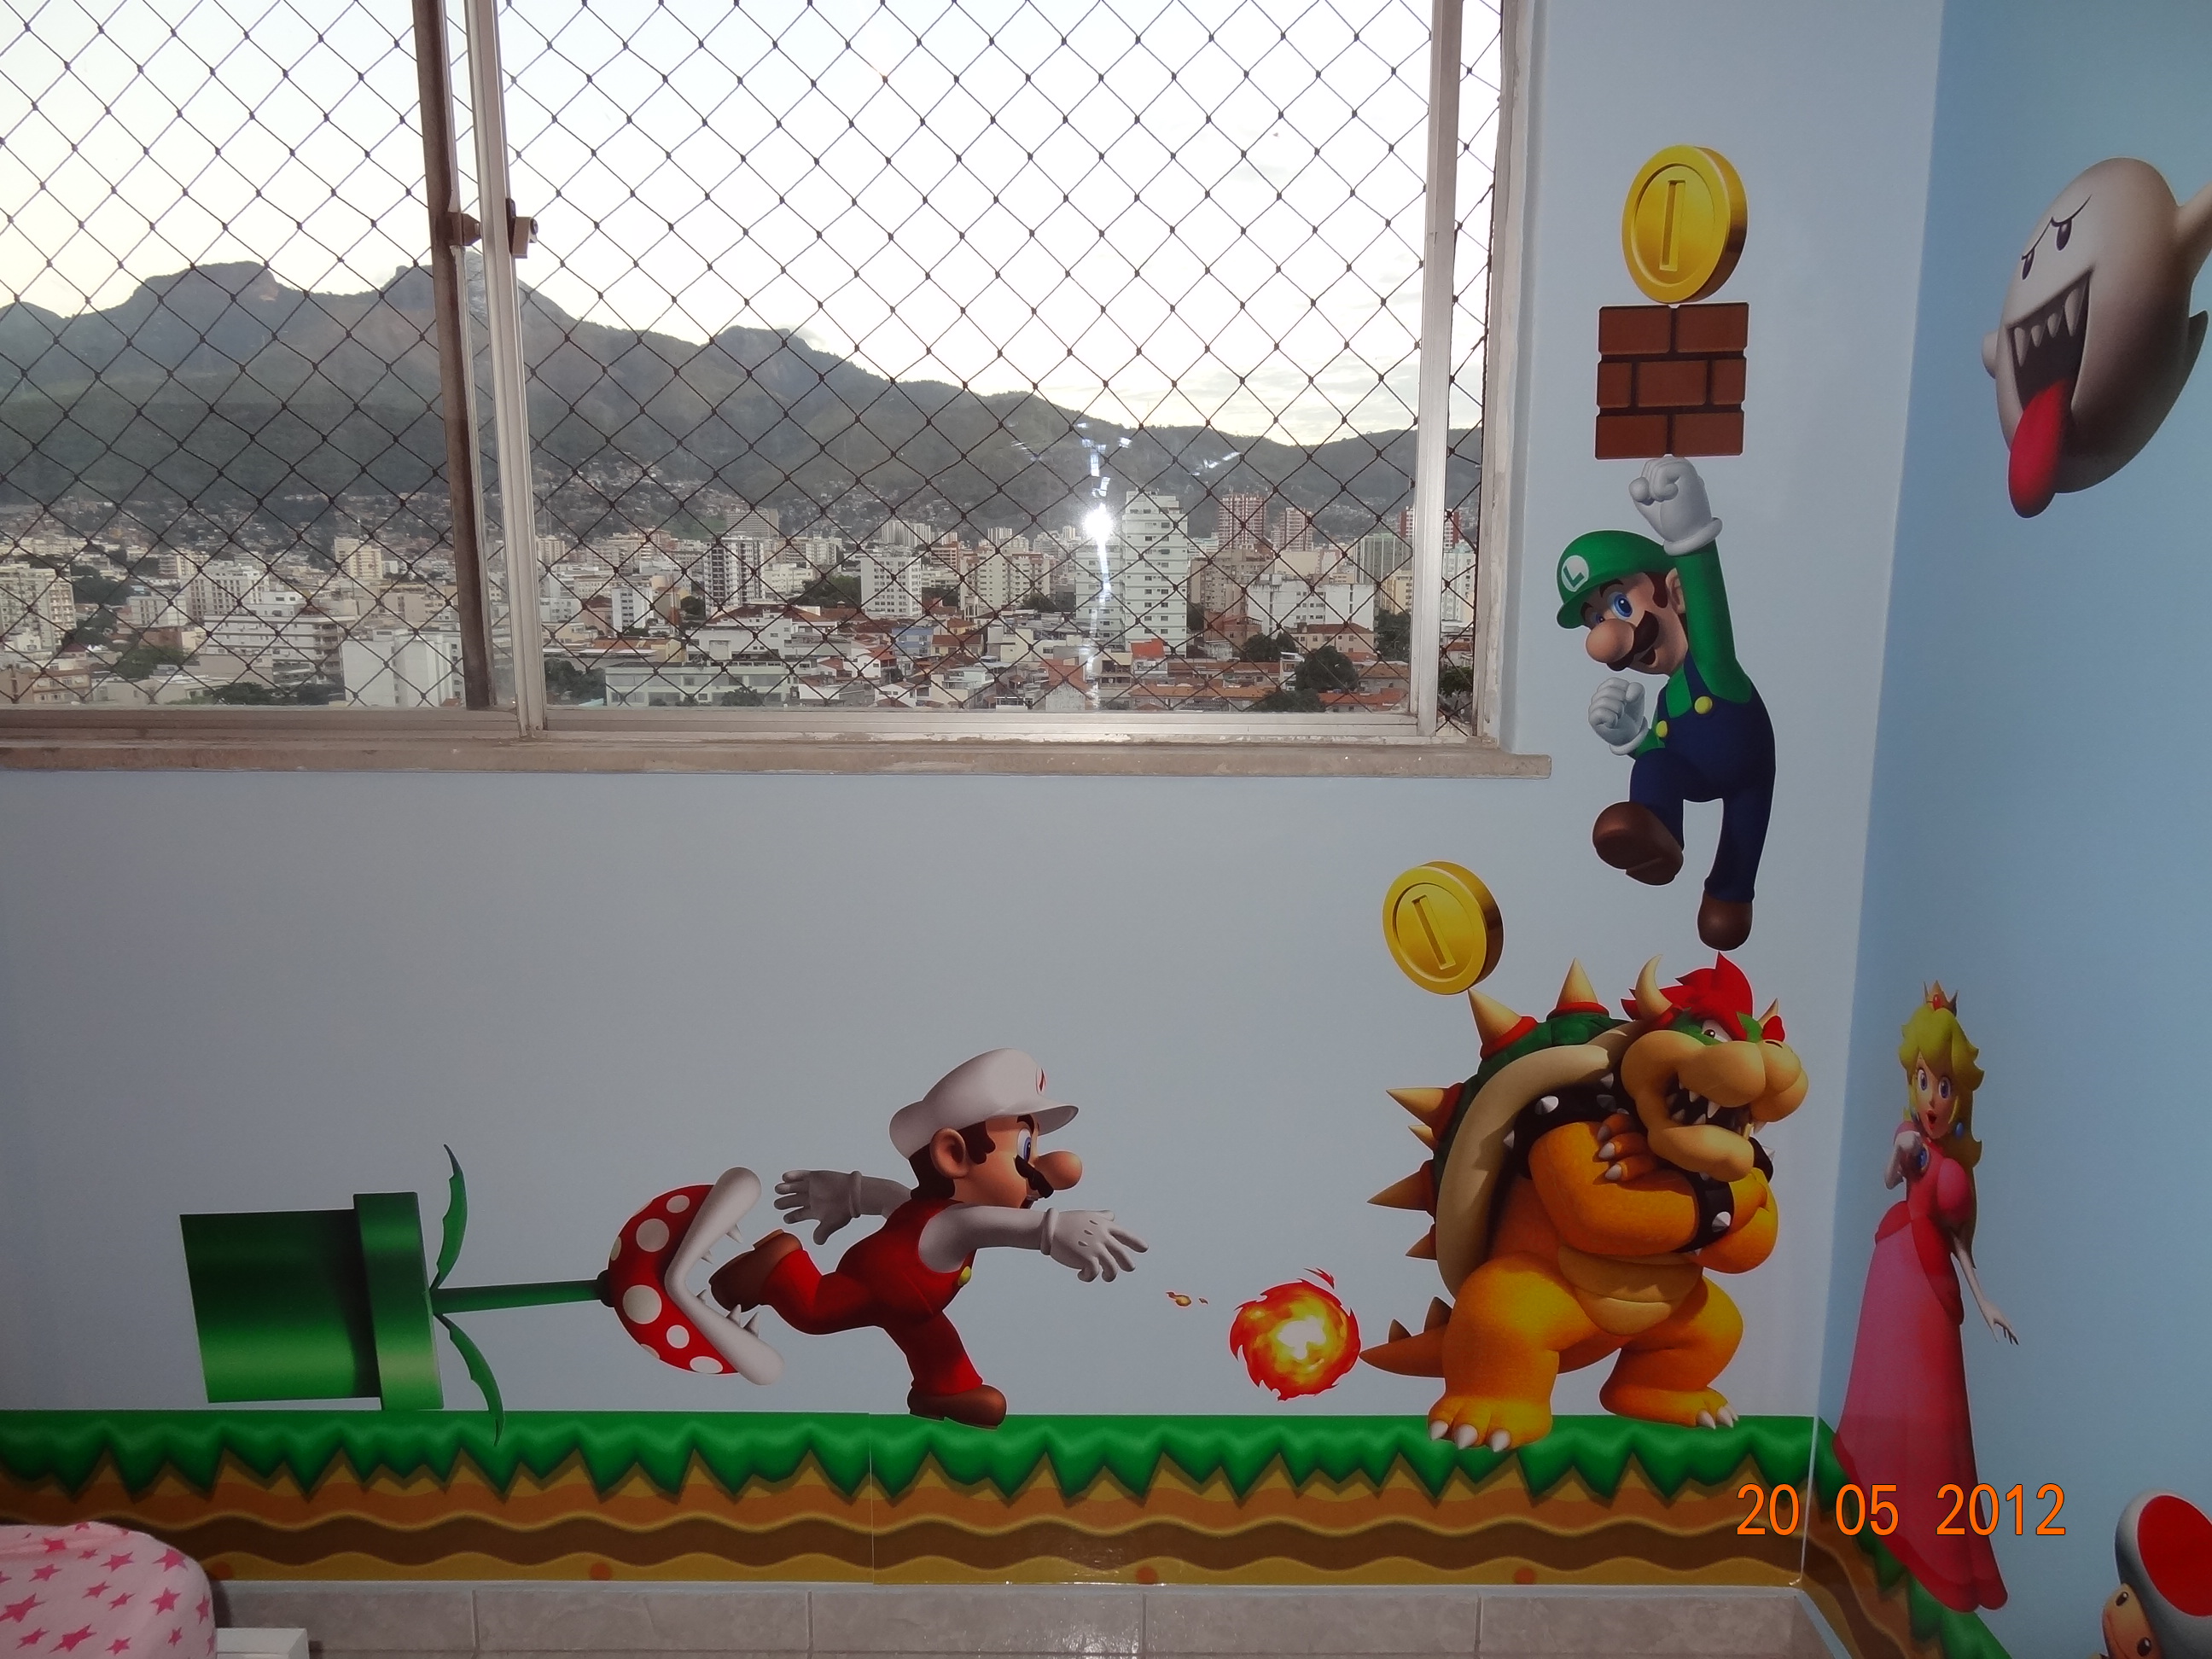 Decoração Mario Bros - O resultado final!